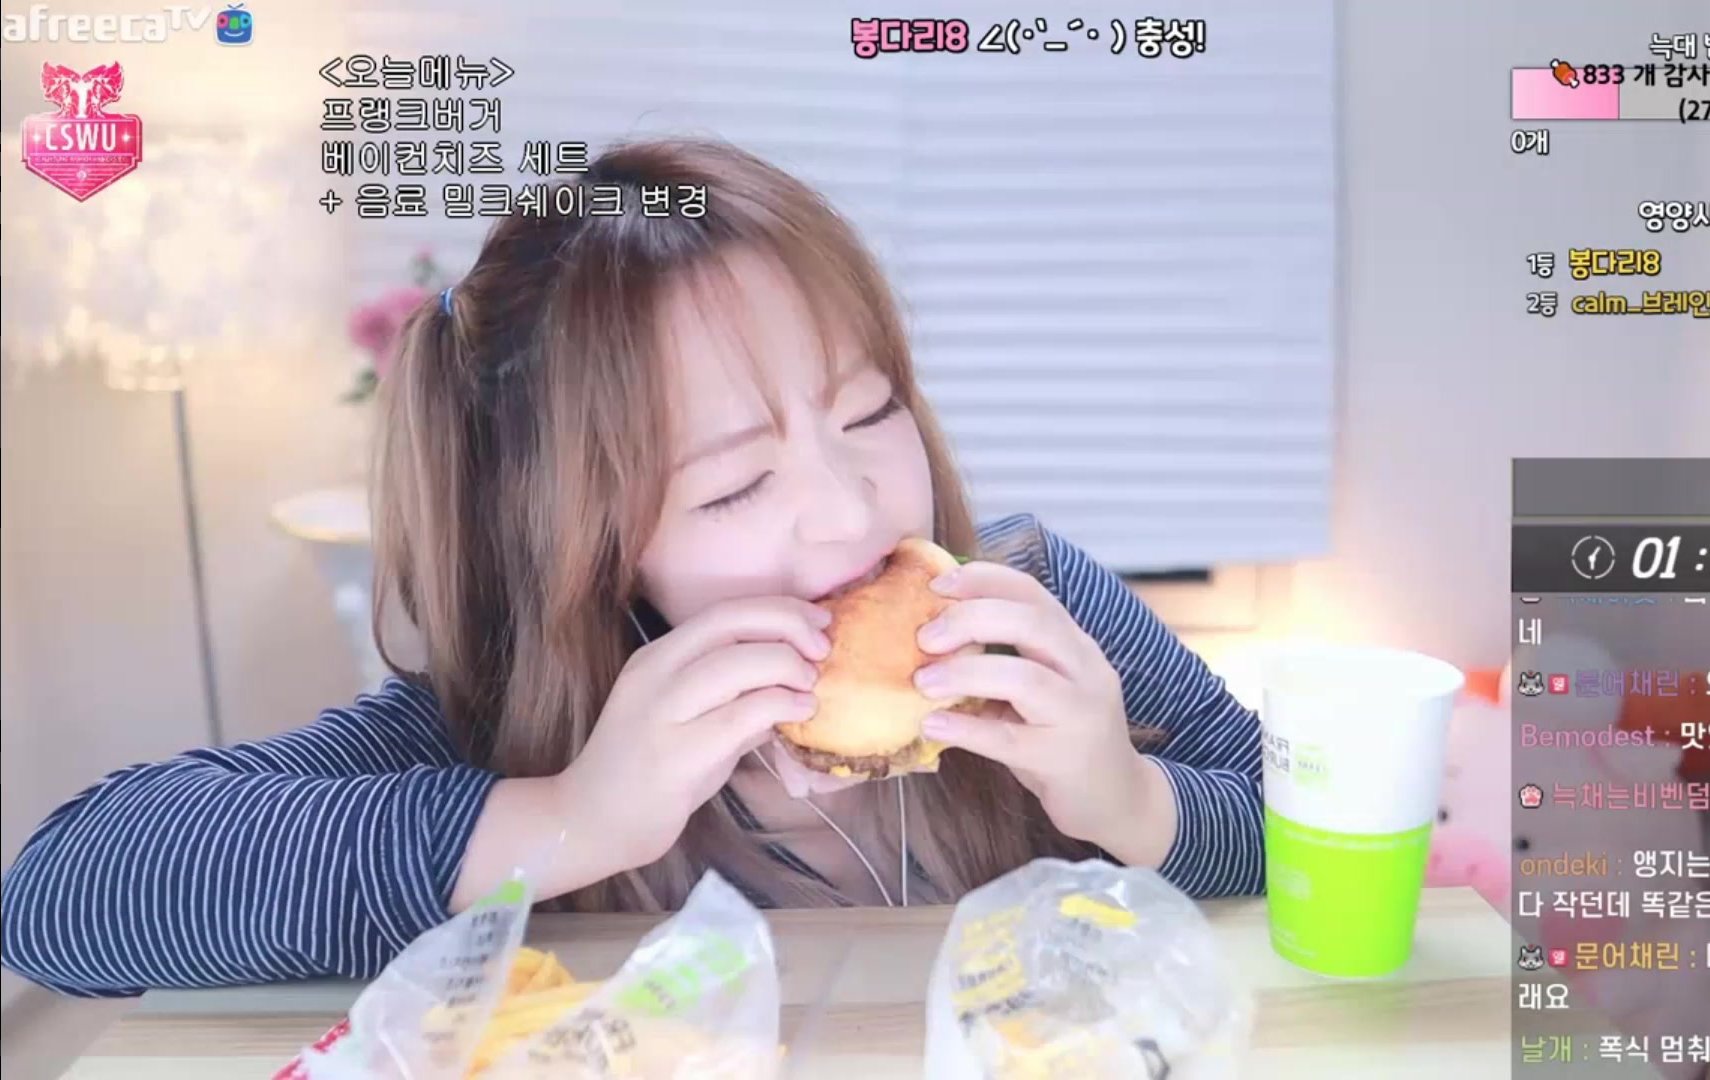 Cute Korean streamer mouth stuffs a burger